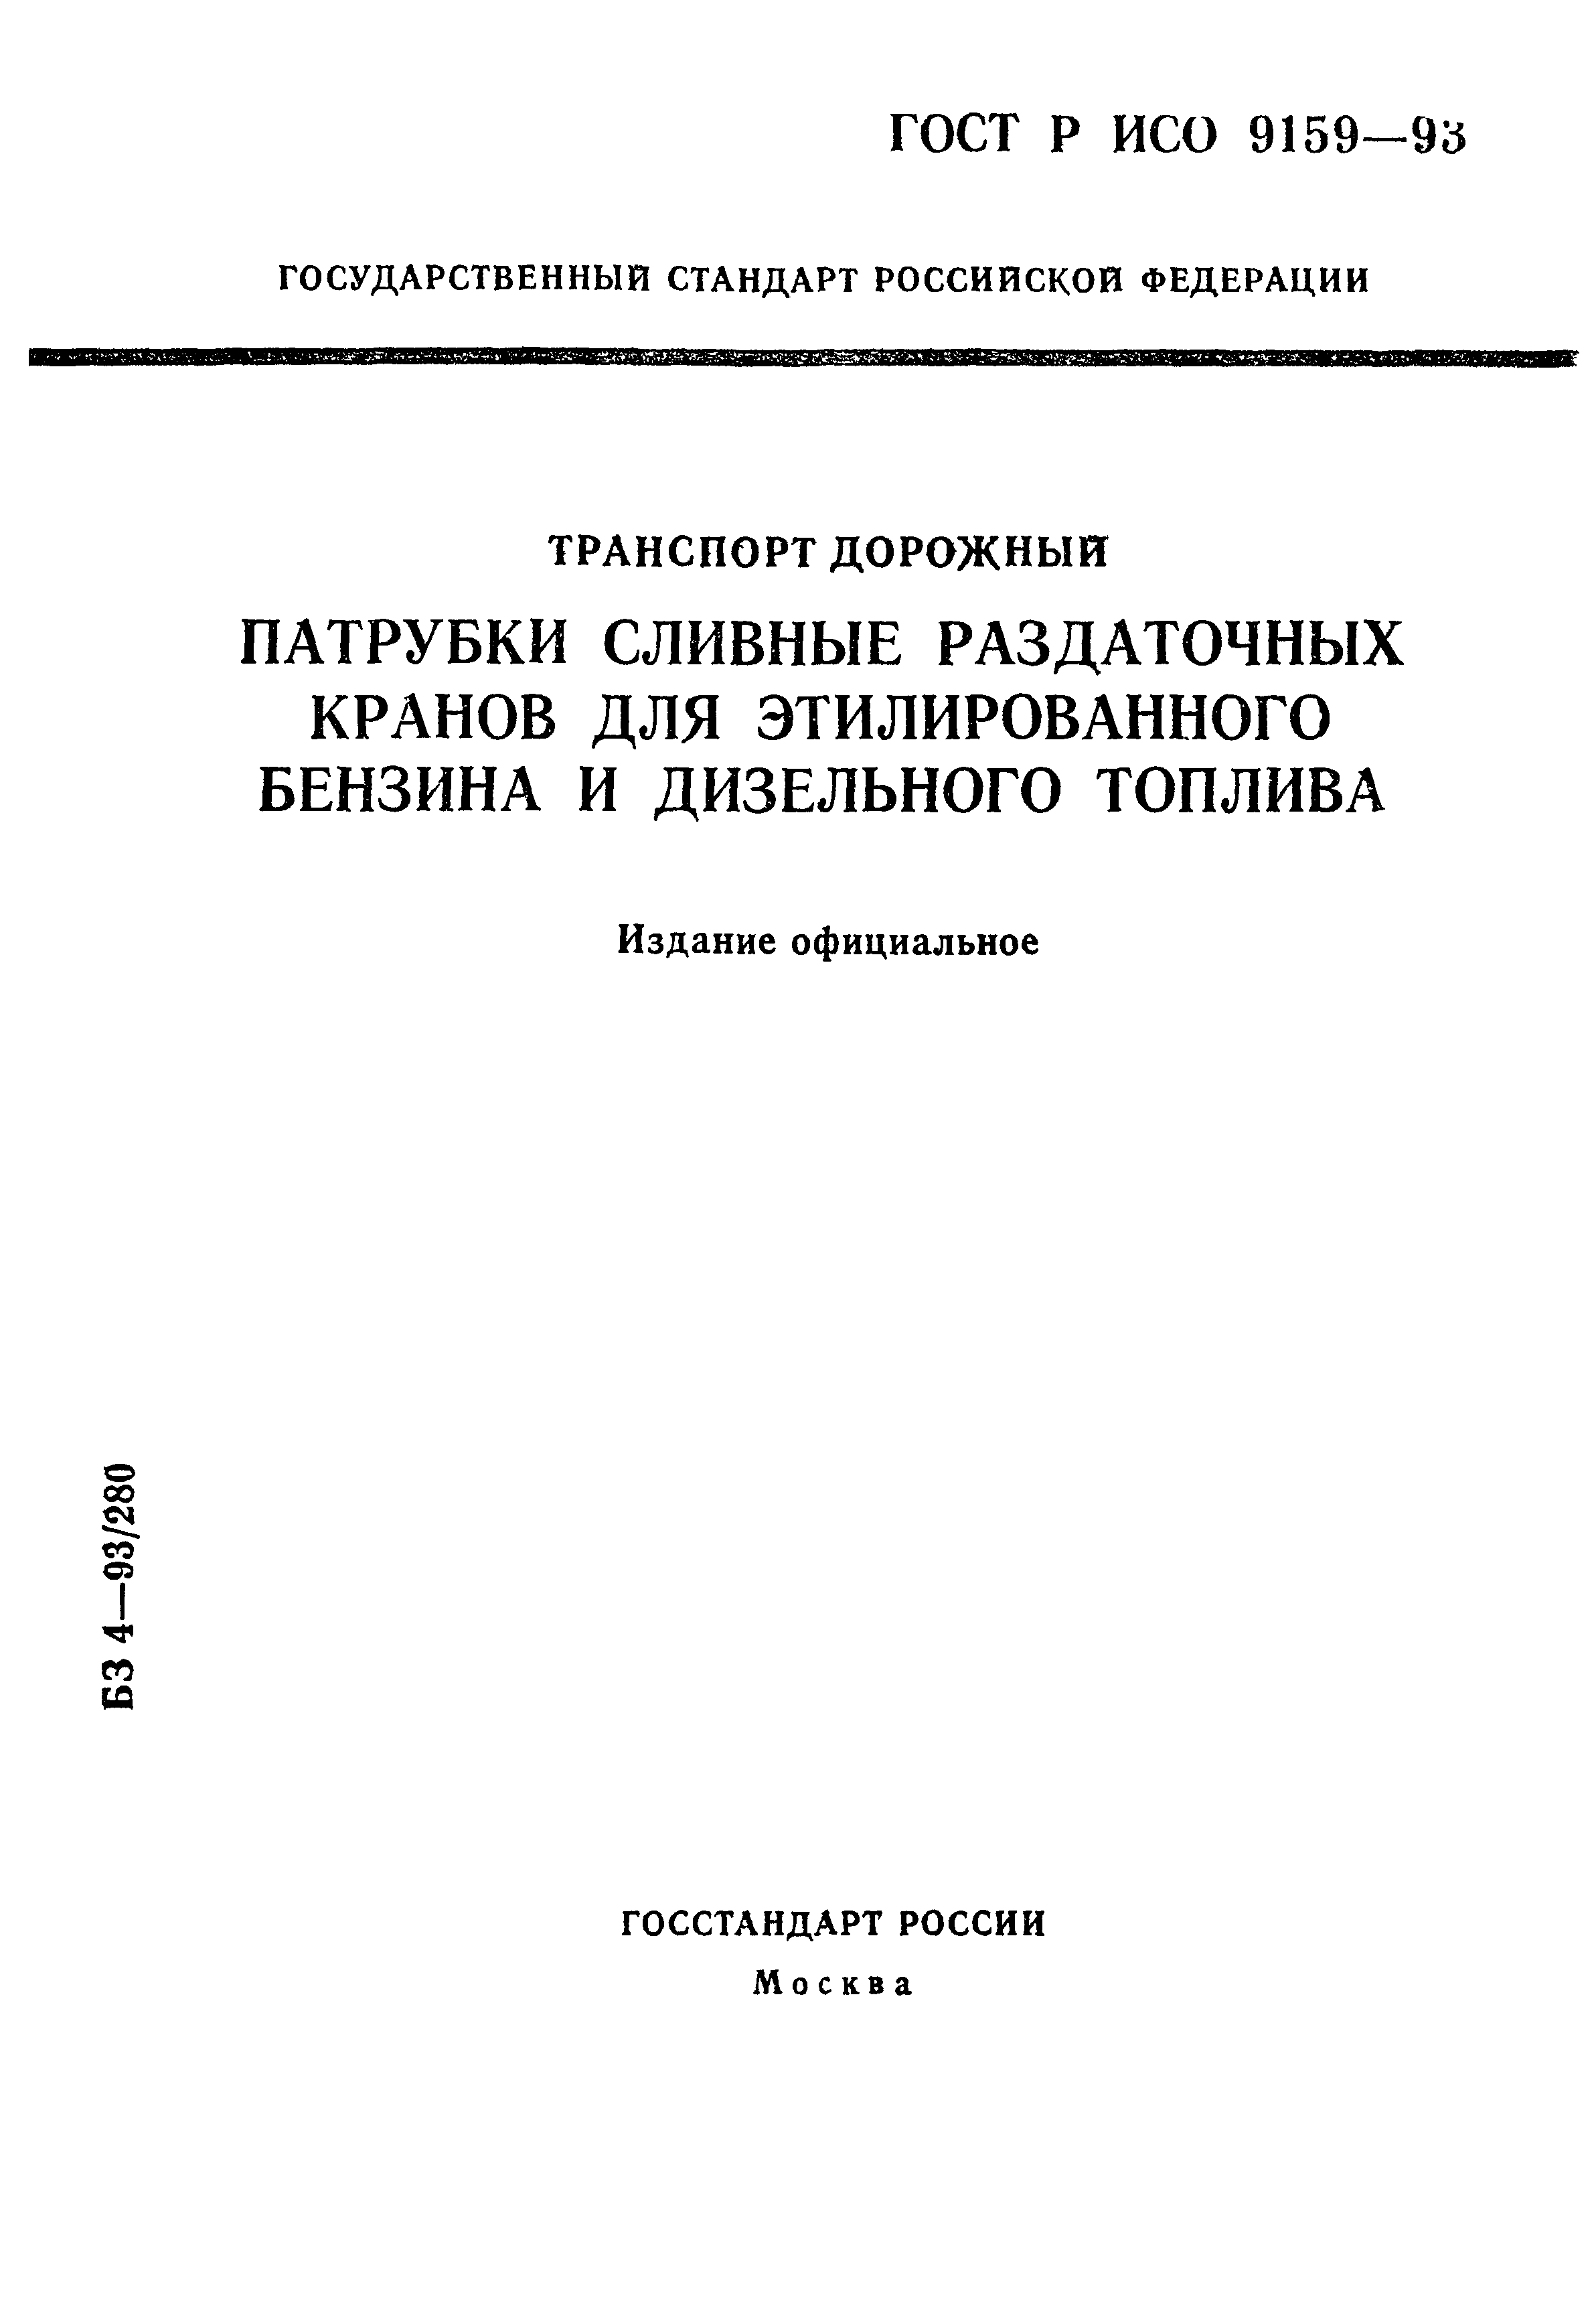 ГОСТ Р ИСО 9159-93